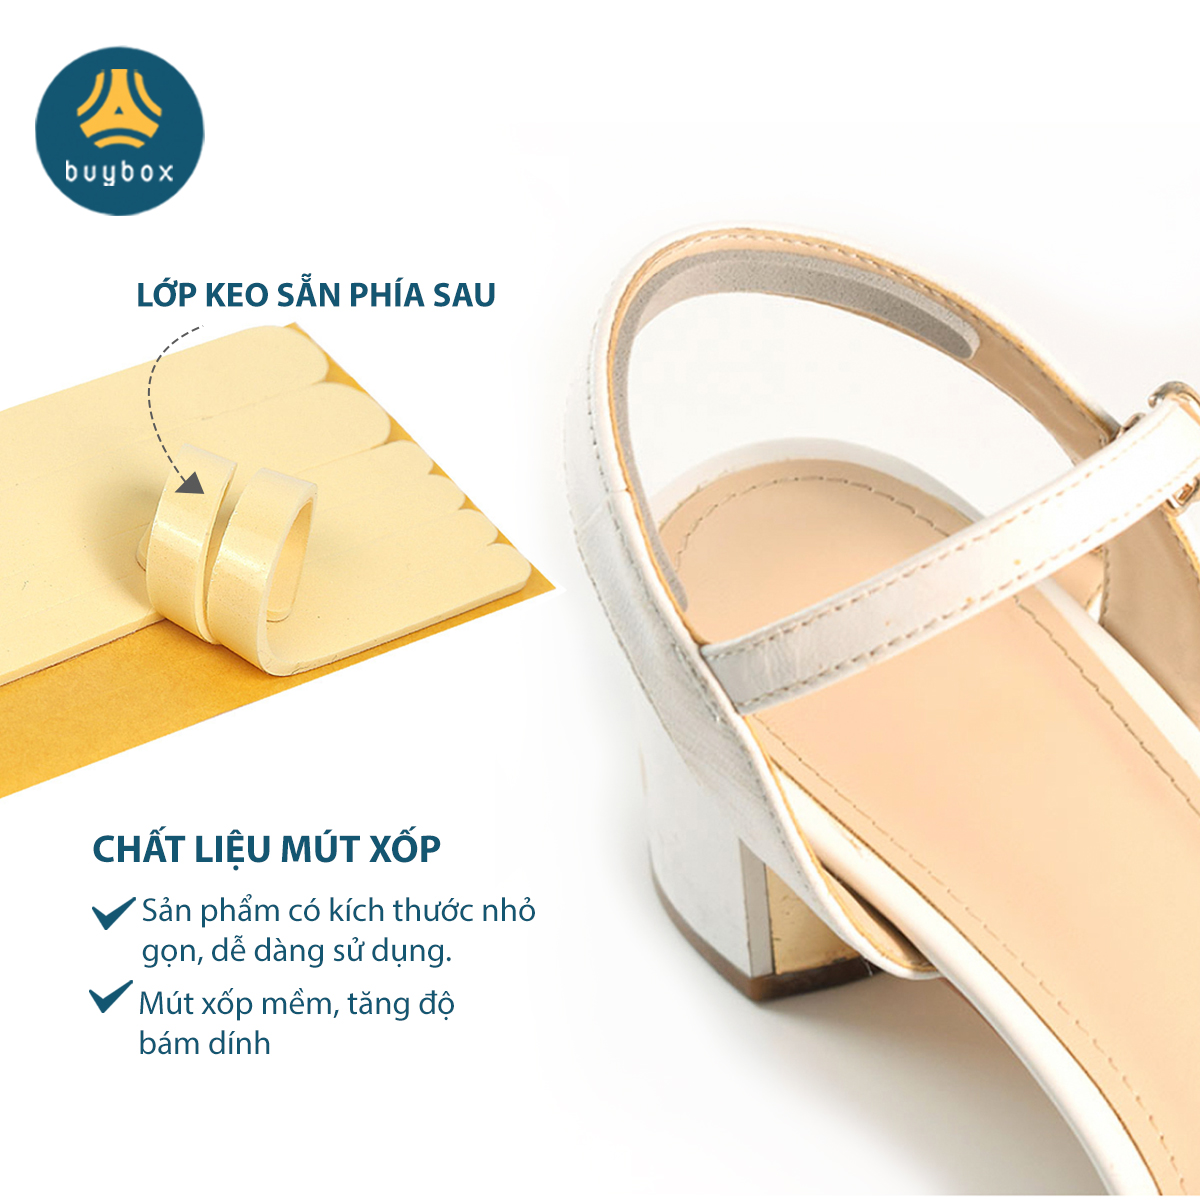 Hình ảnh Miếng dán chống trầy gót chuyên dùng cho sandal, giày cao gót chất liệu EVA, silicone cao cấp - Buybox - BBPK282